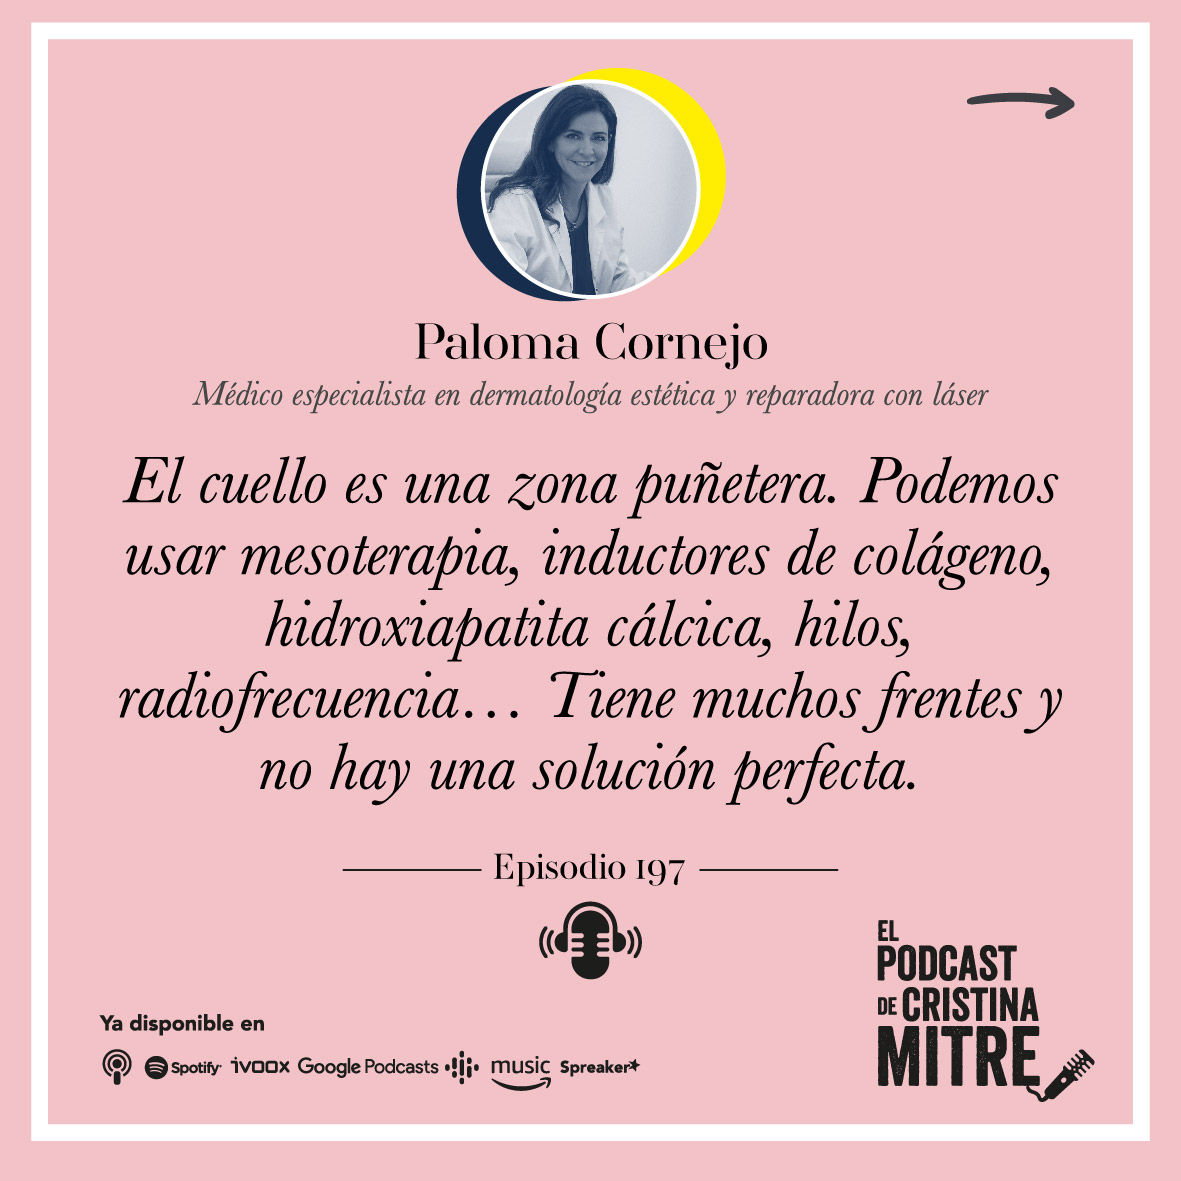 El Podcast de Cristina Mitre Paloma Cornejo laser vascular